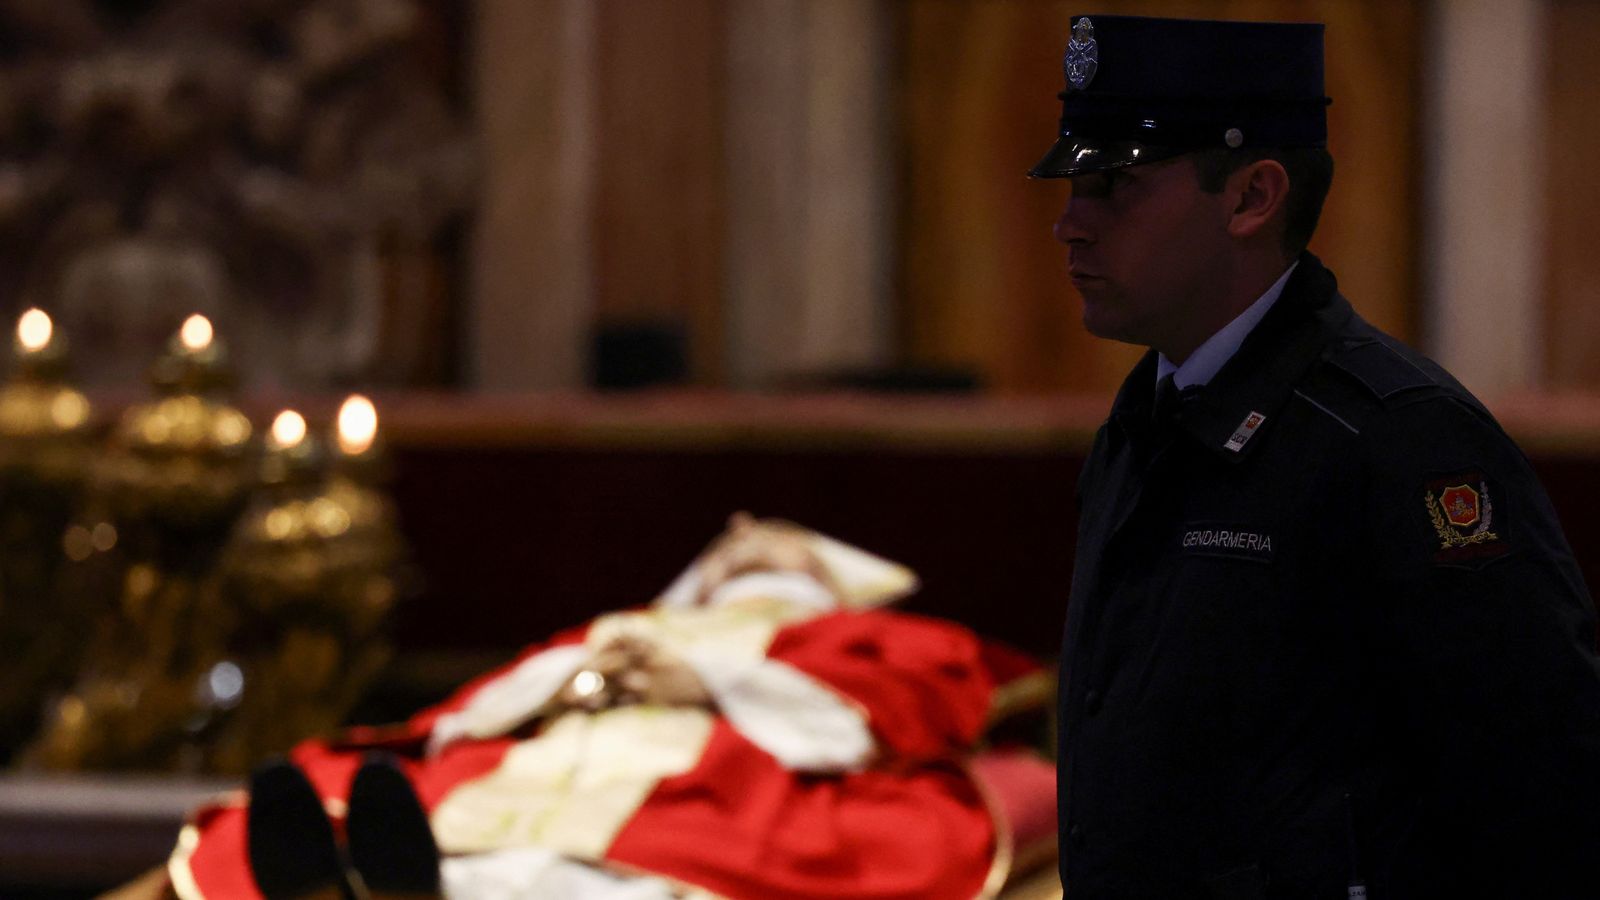 法王ベネディクトの葬式明日は歴史を作る | 世界のニュース